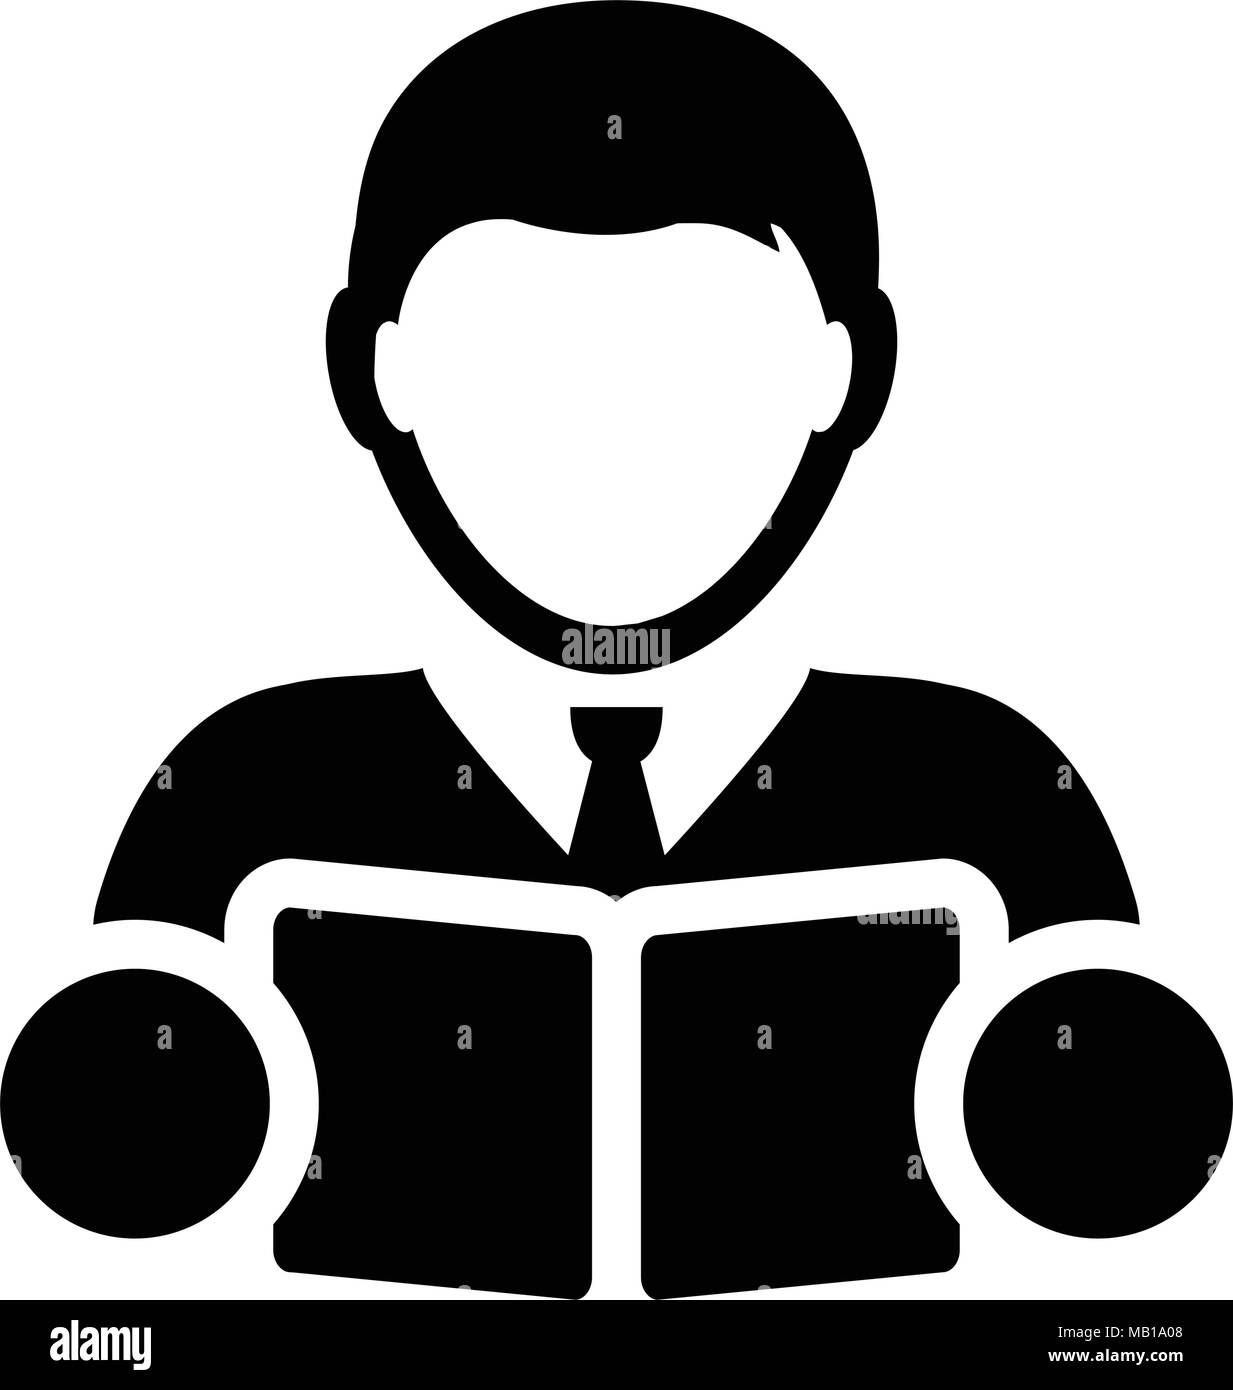 Buchen Sie Symbol Vektor mit männlichen Kursteilnehmer oder Lehrer Person Profil Avatar für Schule, Hochschule und Universität Bildung in Glyph Piktogramm Abbildung Stock Vektor